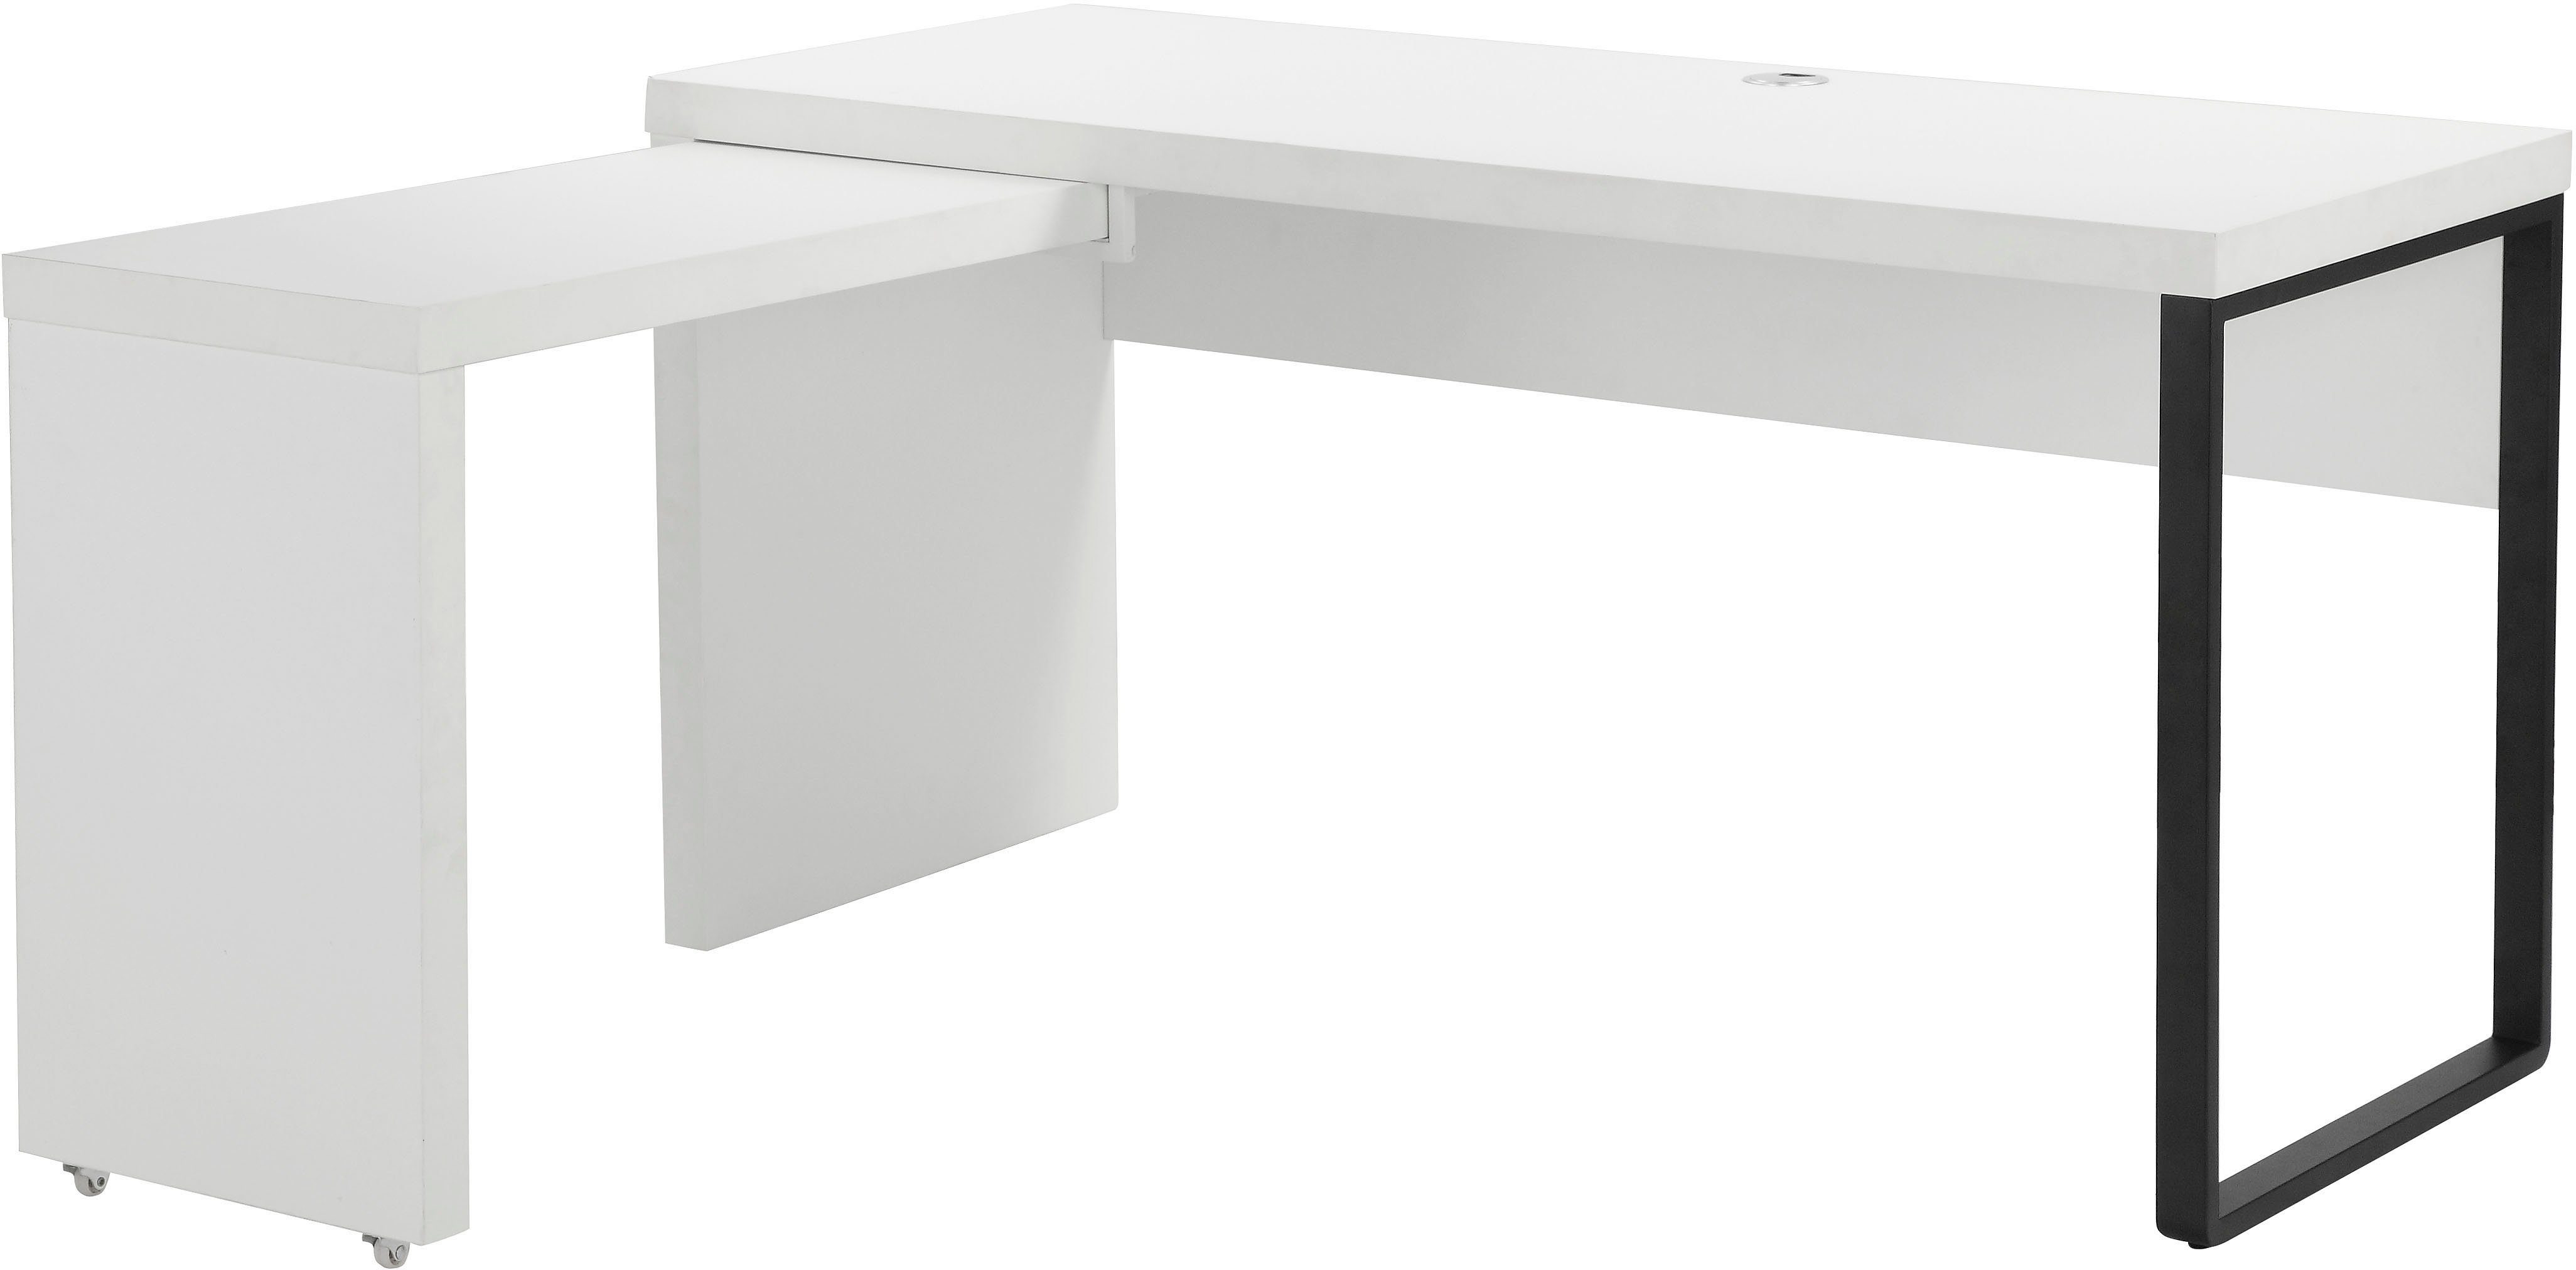 140x81-131 Maniago, Style Places cm Arbeitsfläche, rollbarem of mehr Element für mit Schreibtisch